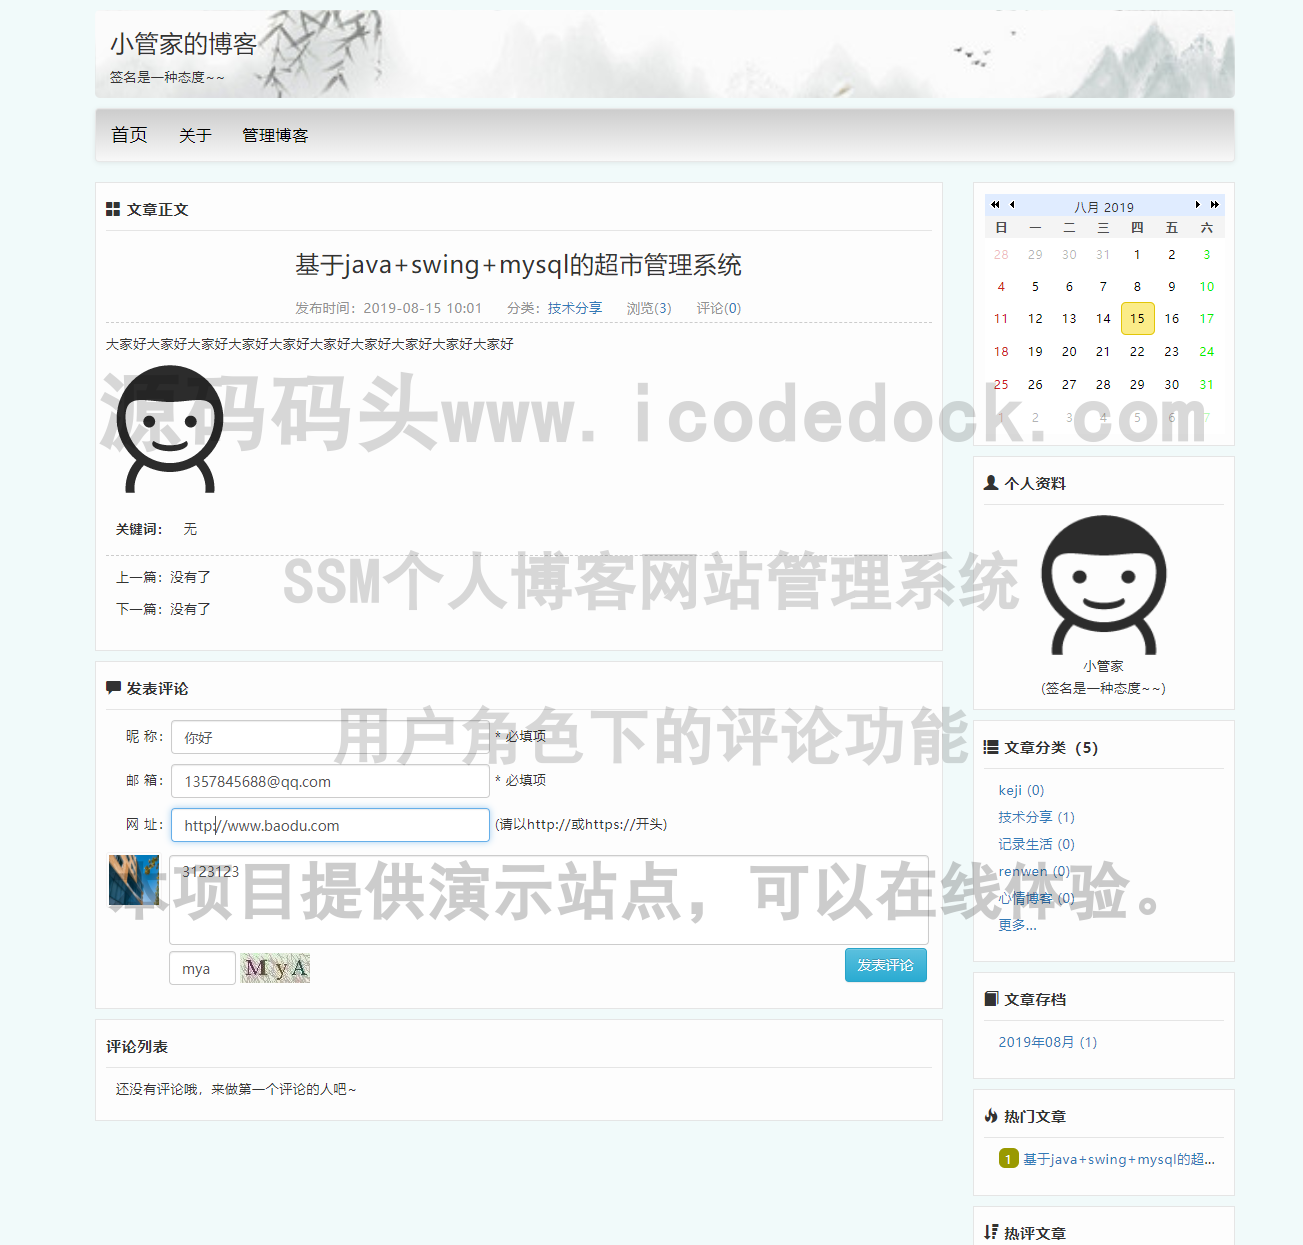 源码码头-SSM个人博客网站管理系统-用户角色-评论